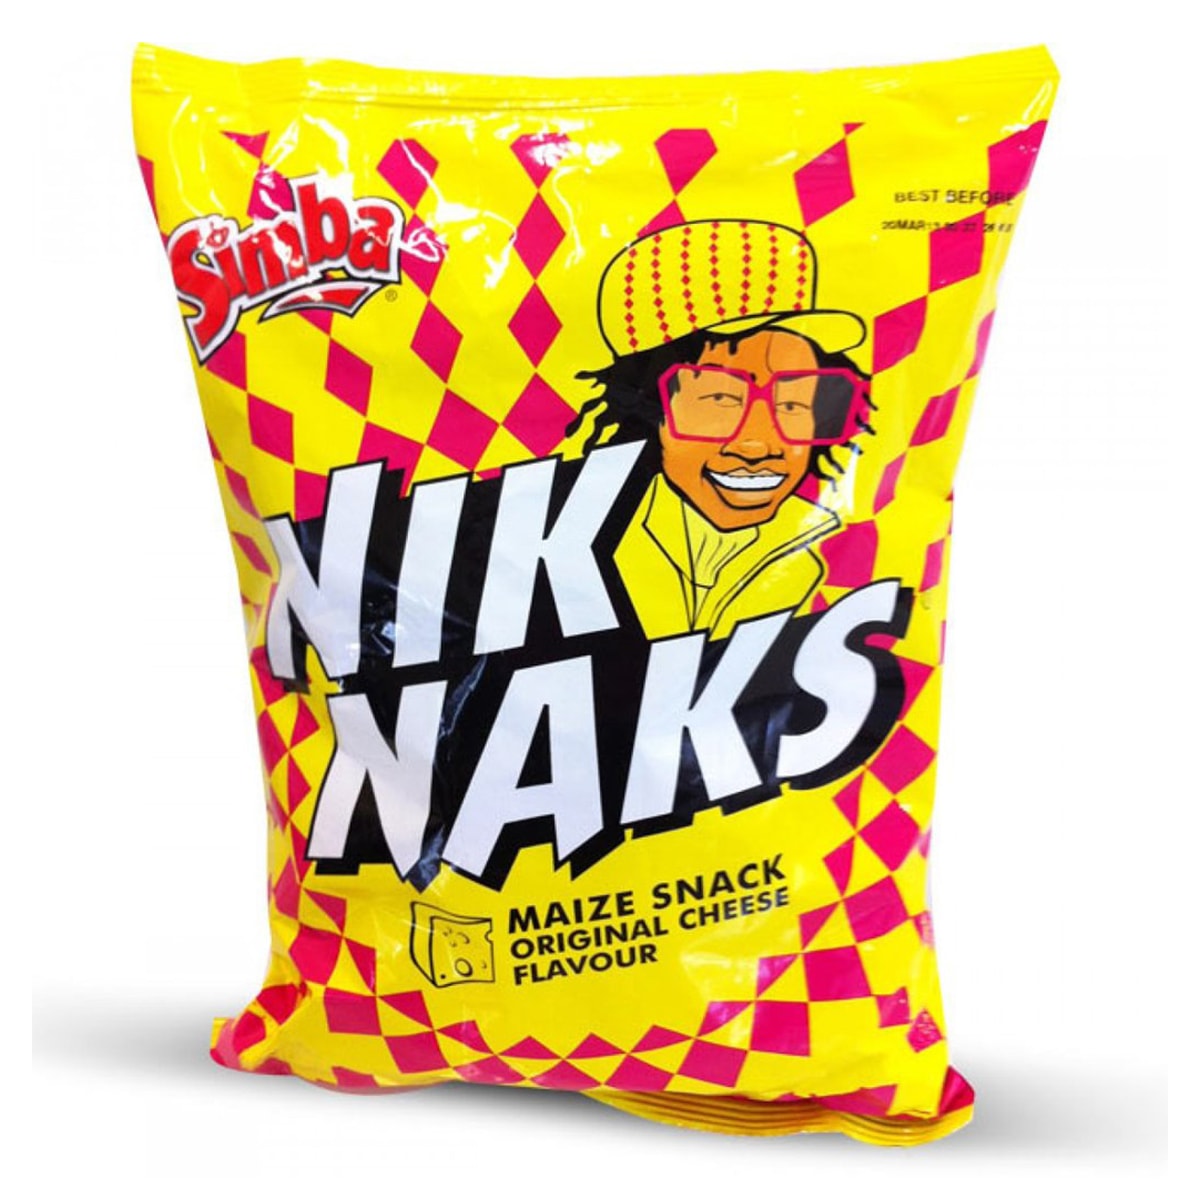 Buy Simba Niknaks Maize Snacks Original Cheese Flavour - 150 gm